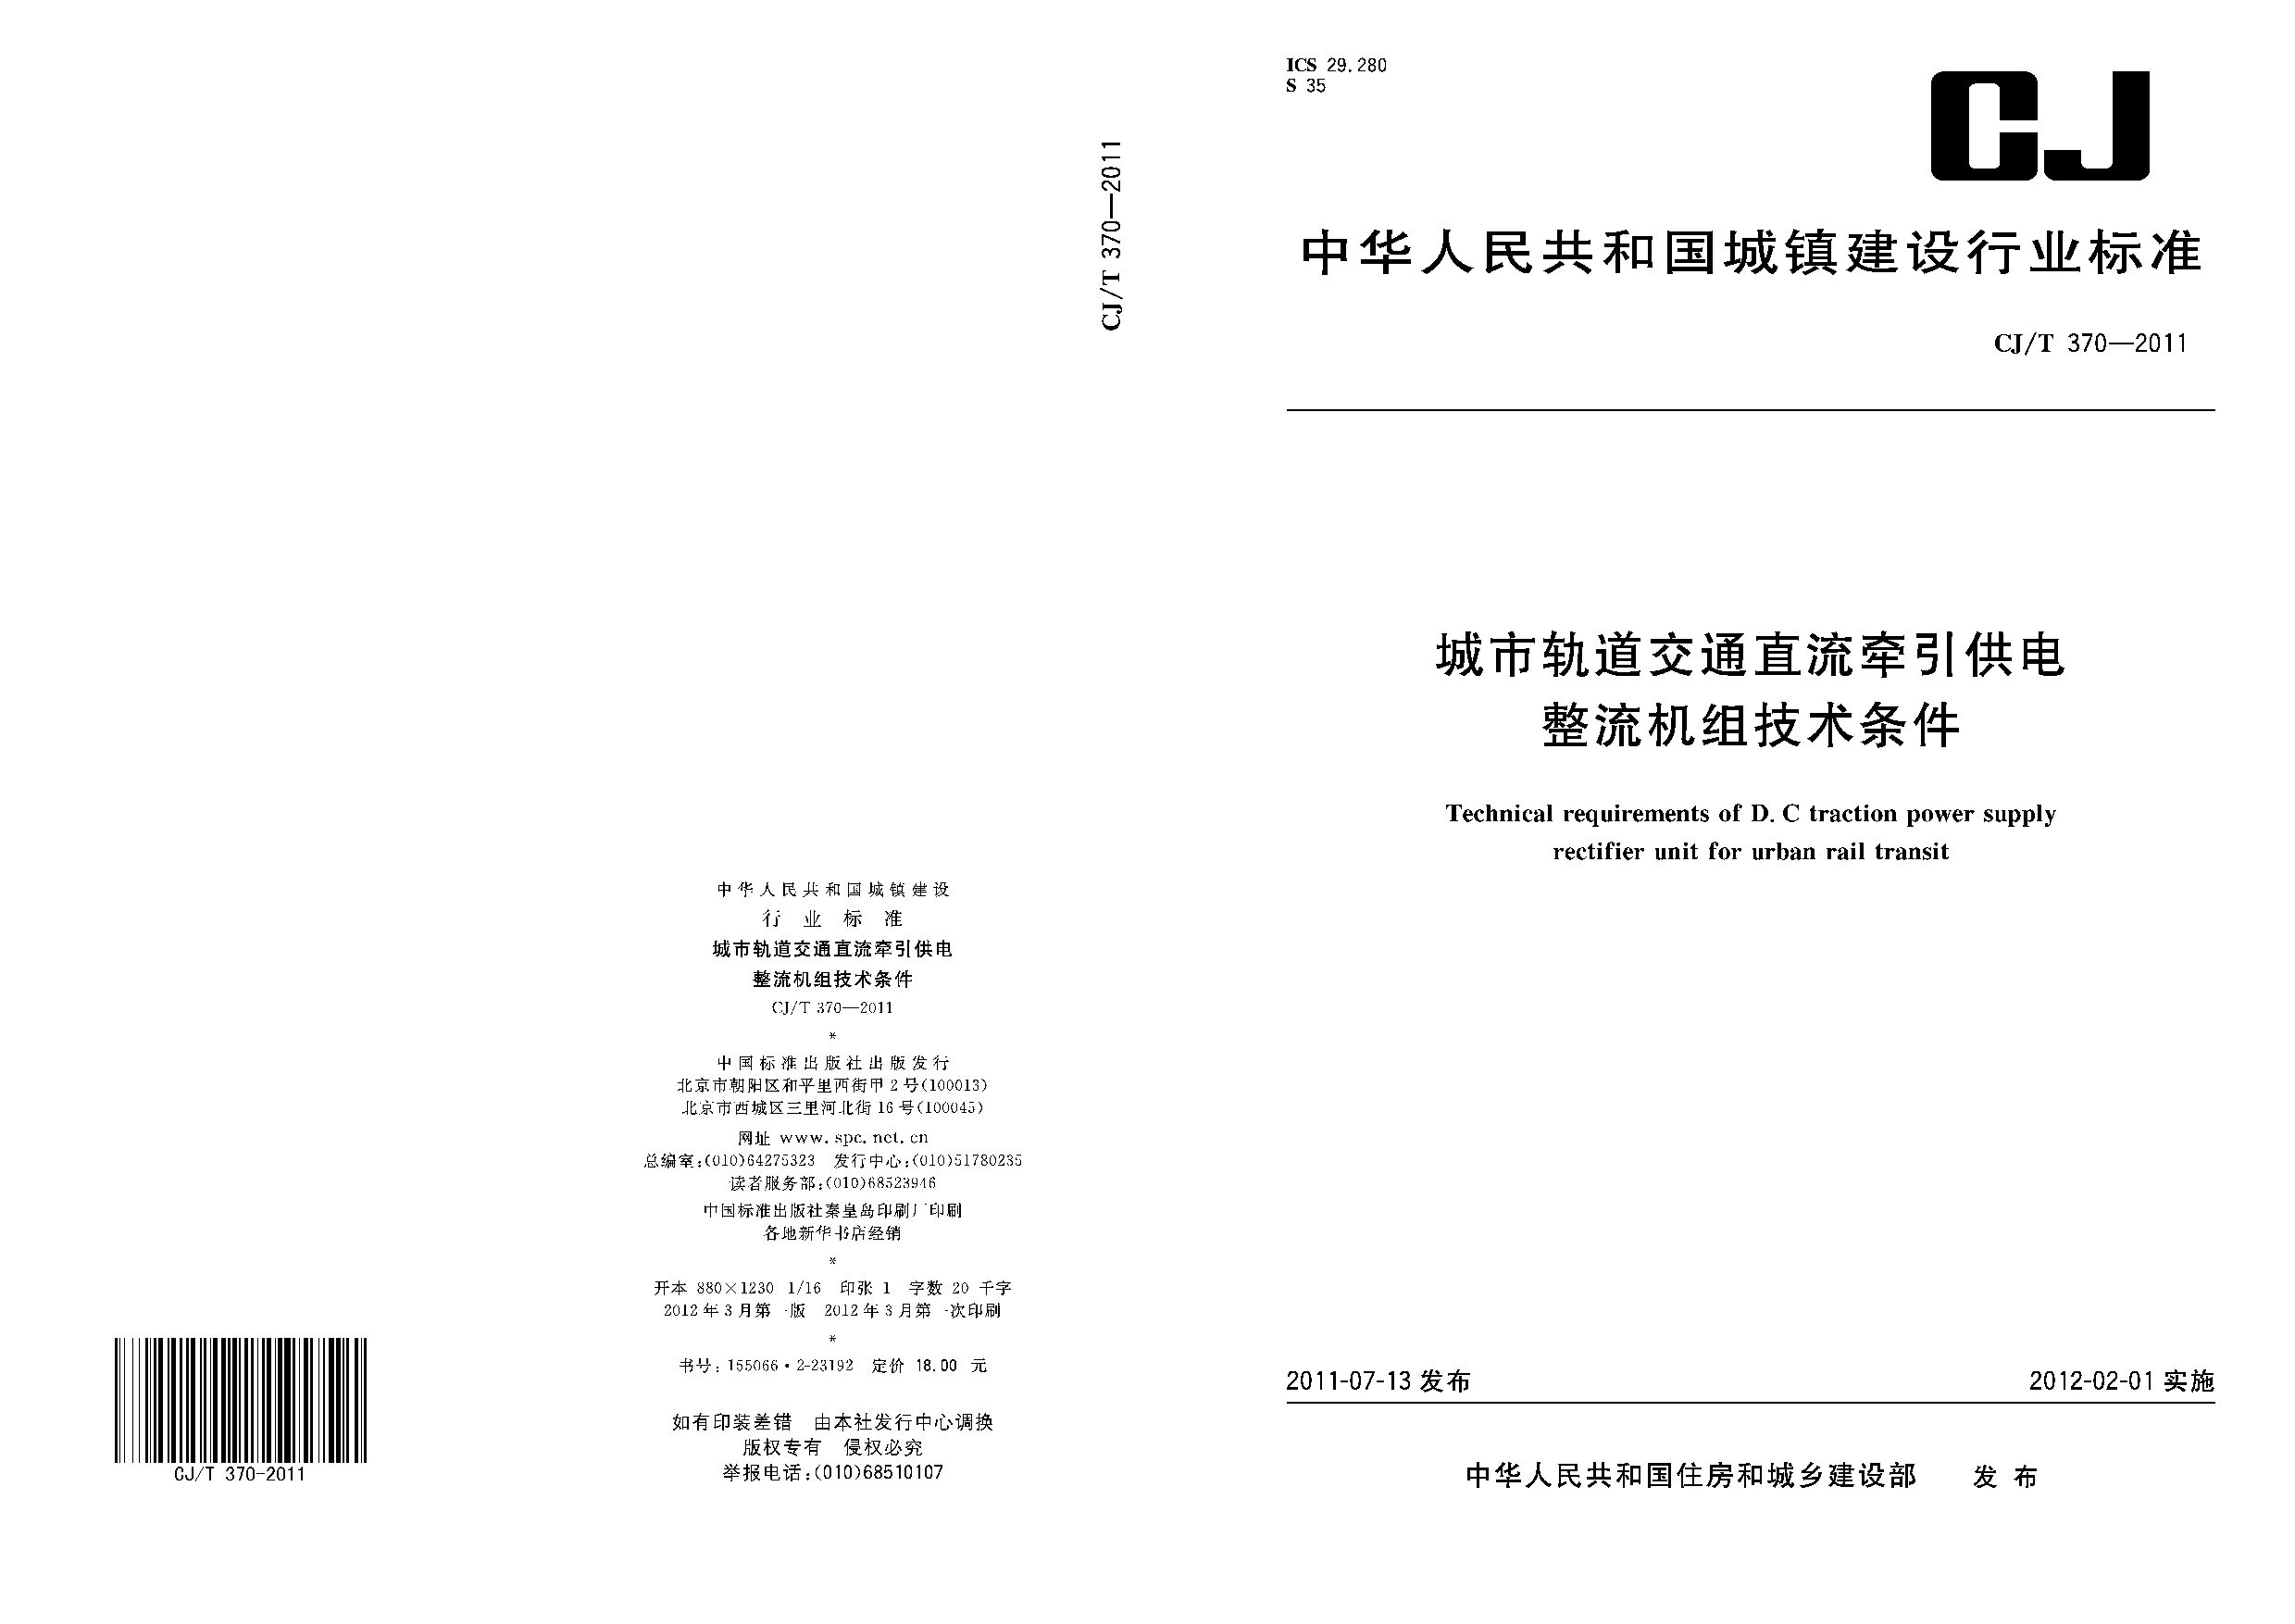 CJ/T 370-2011封面图